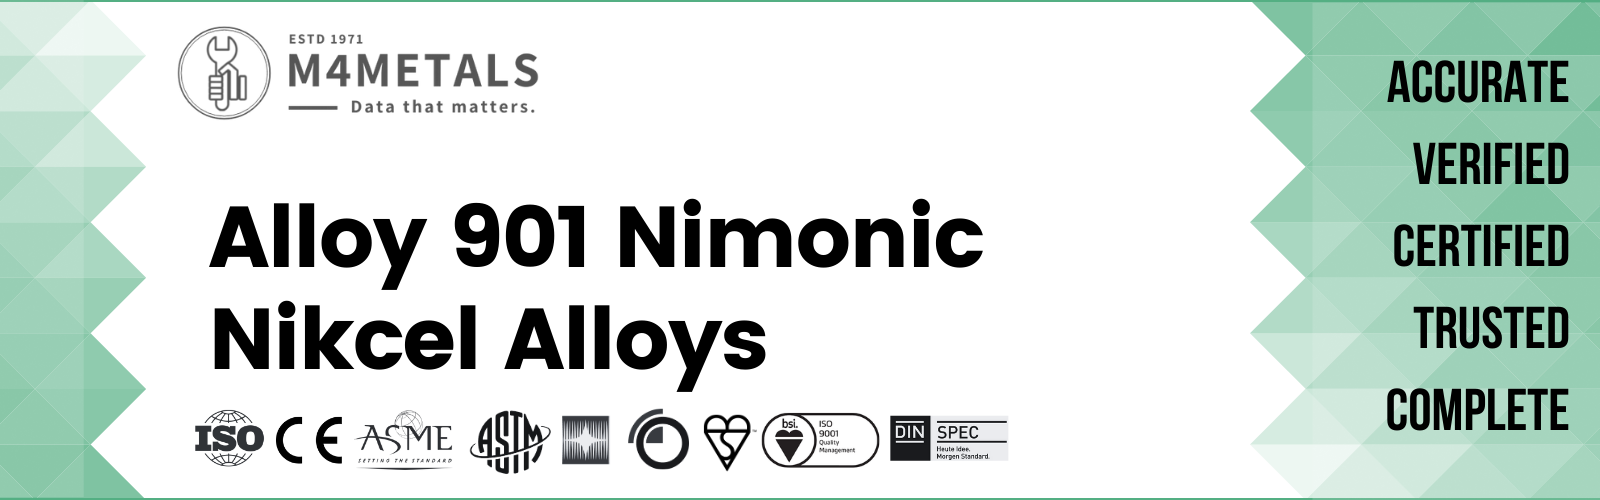 Nimonic Alloy 901